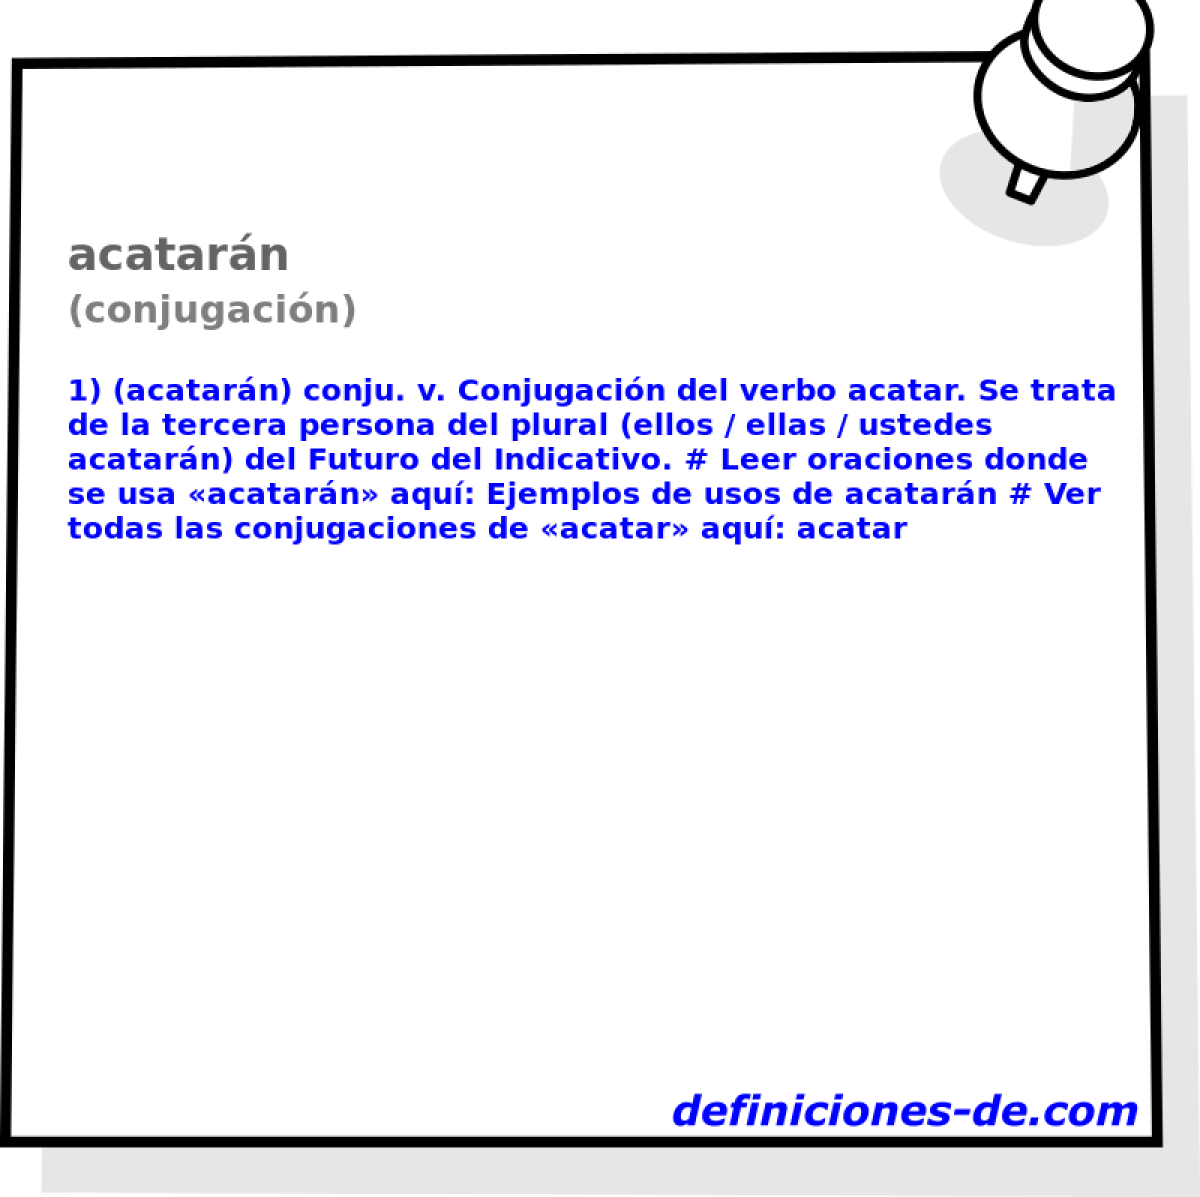 acatarn (conjugacin)